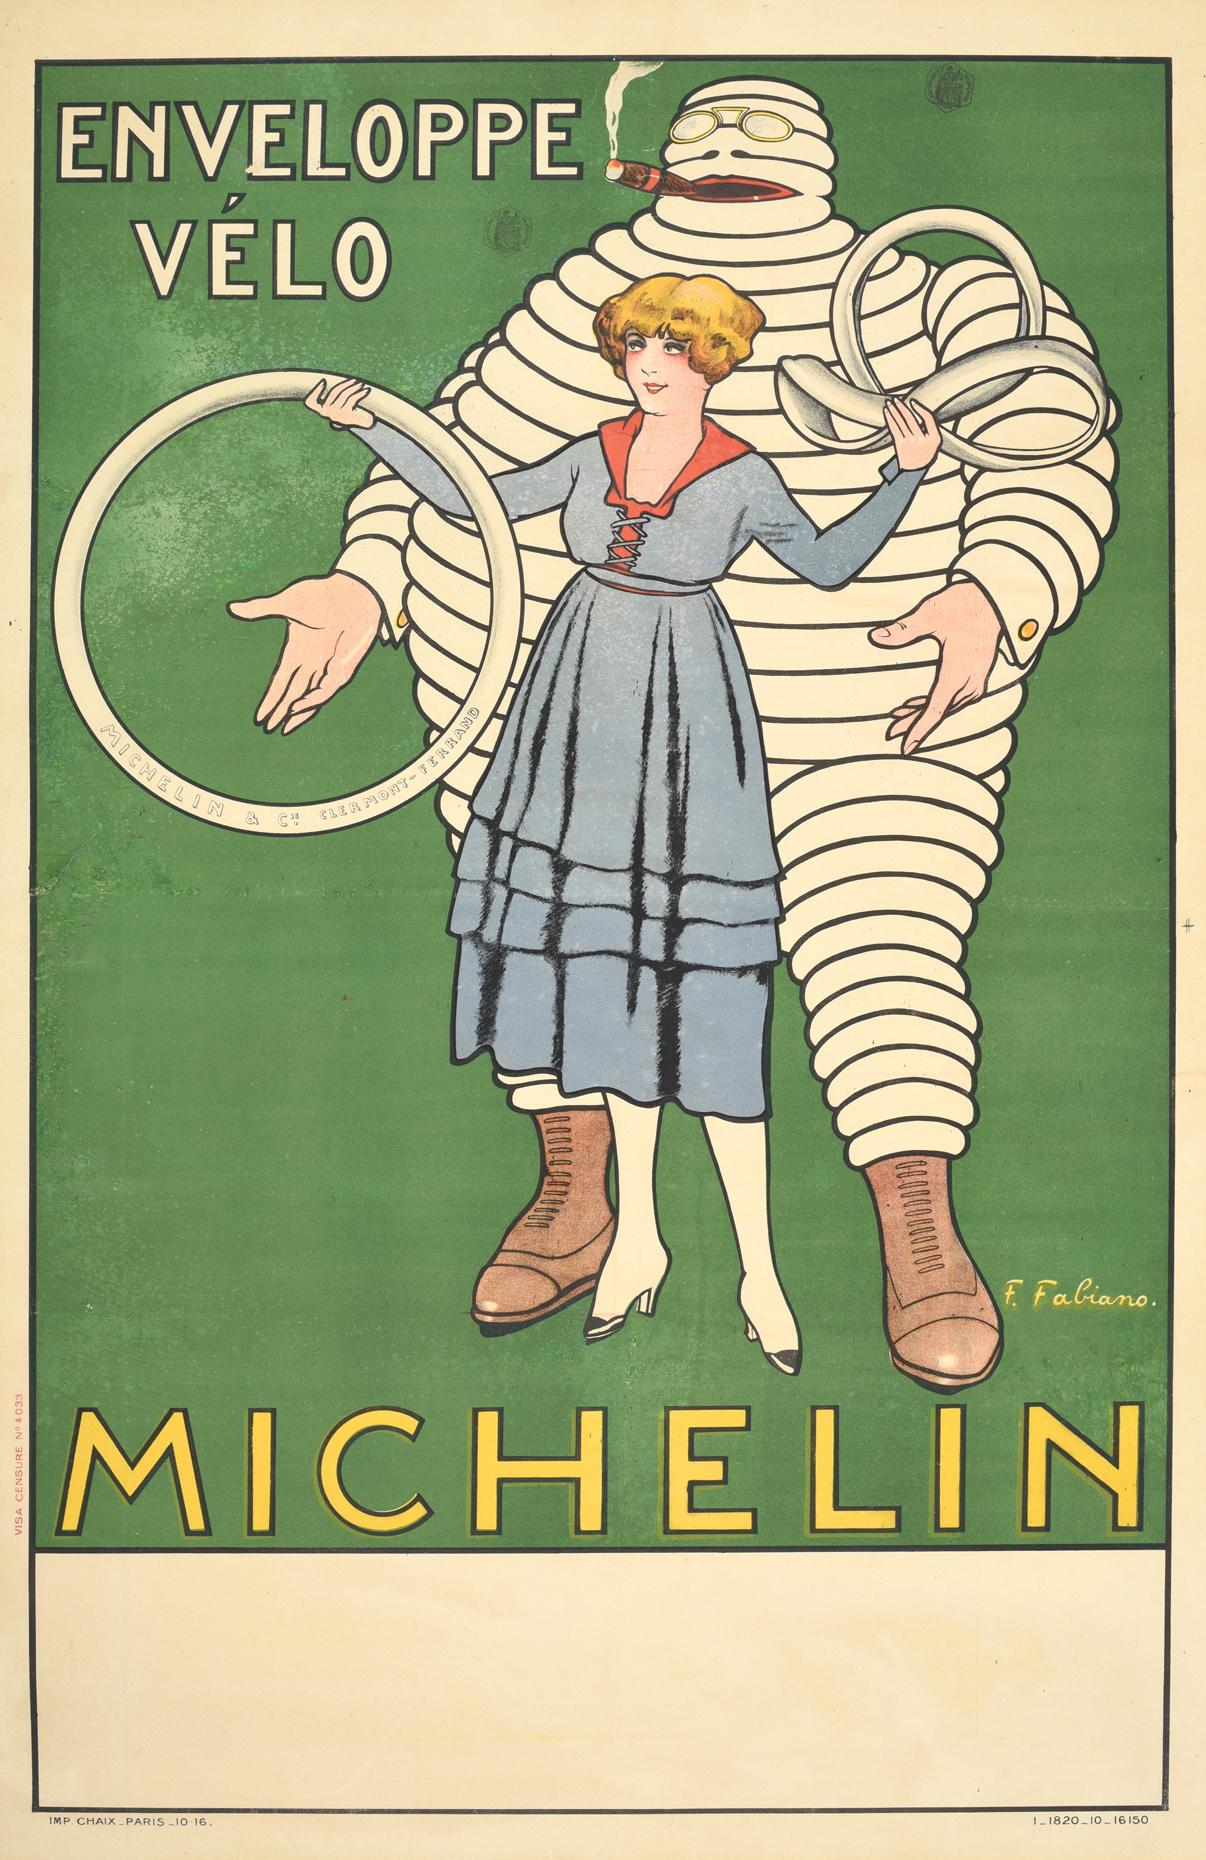 Print Fabien Fabiano - Affiche vintage d'origine d'enveloppes vélo avec le Bonhomme Michelin, dessin du Bibendum emblématique